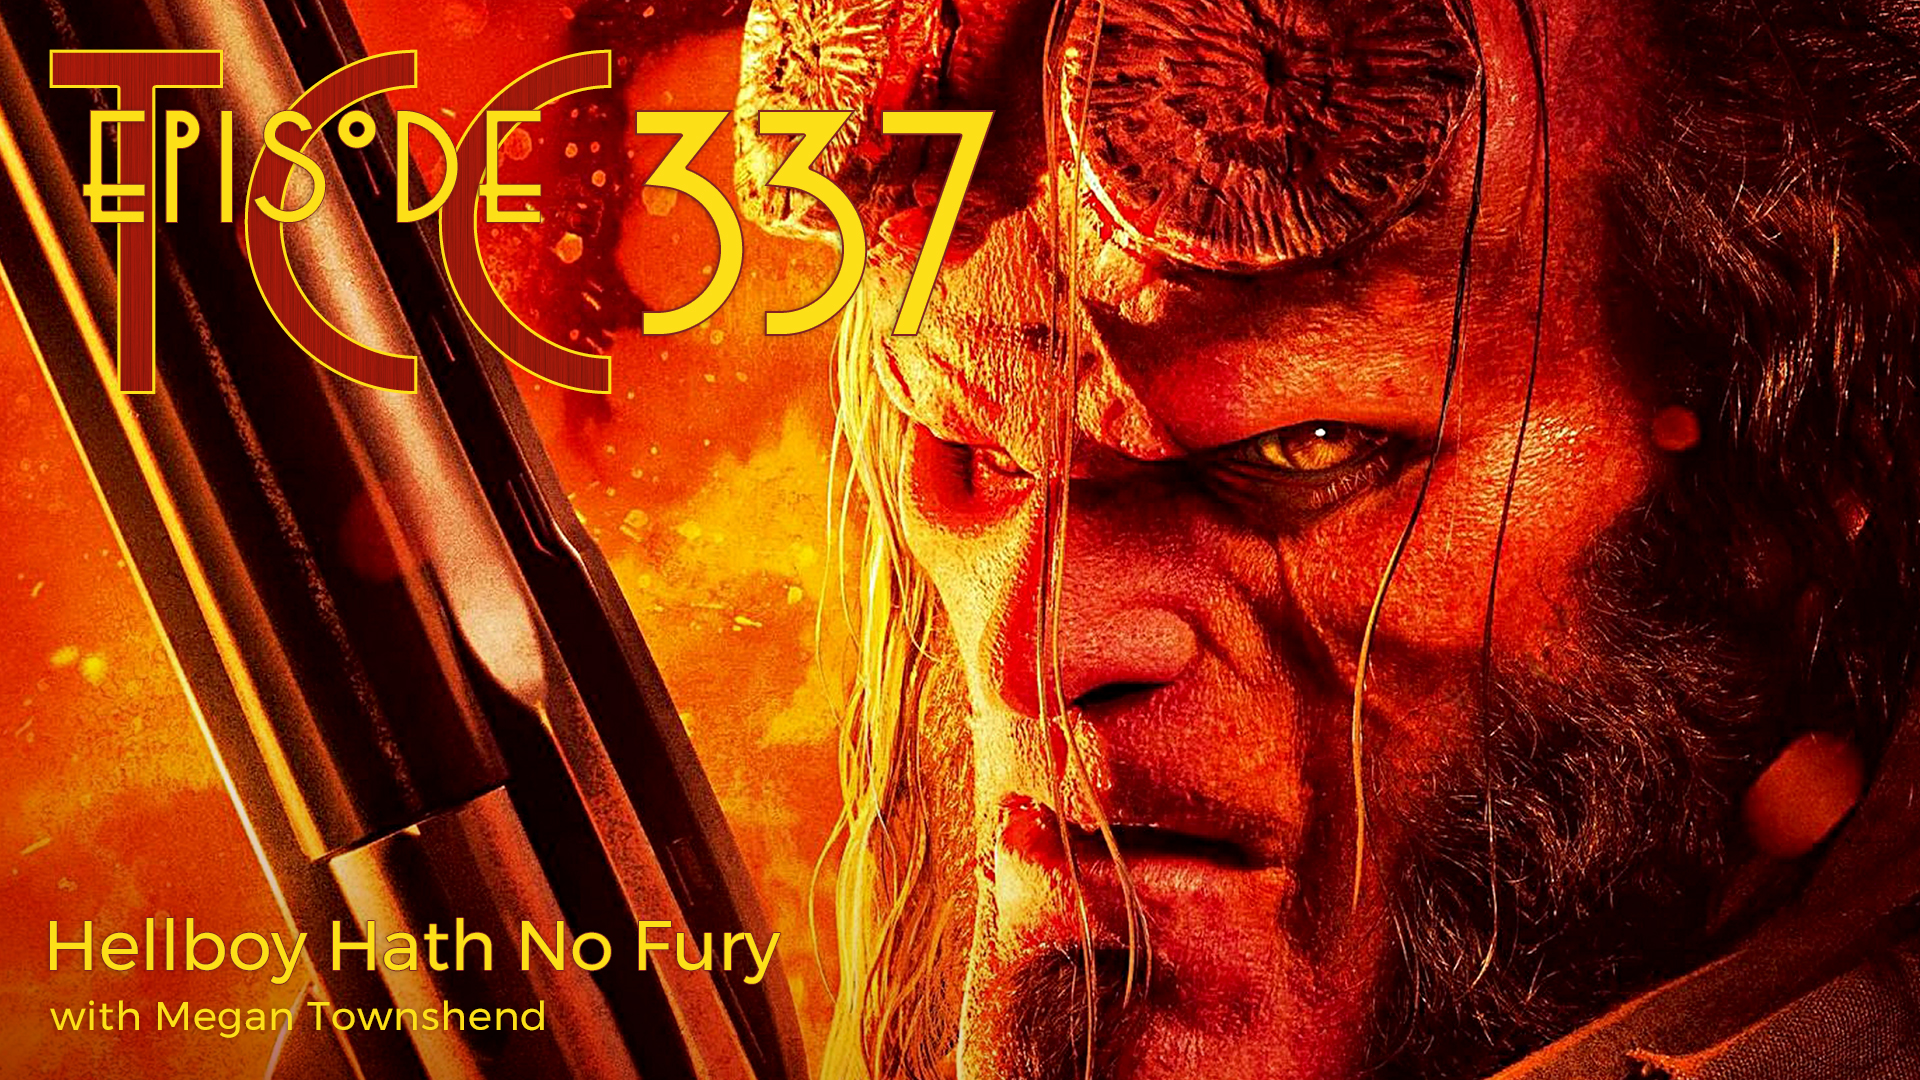 The Citadel Cafe 337: Hellboy Hath No Fury